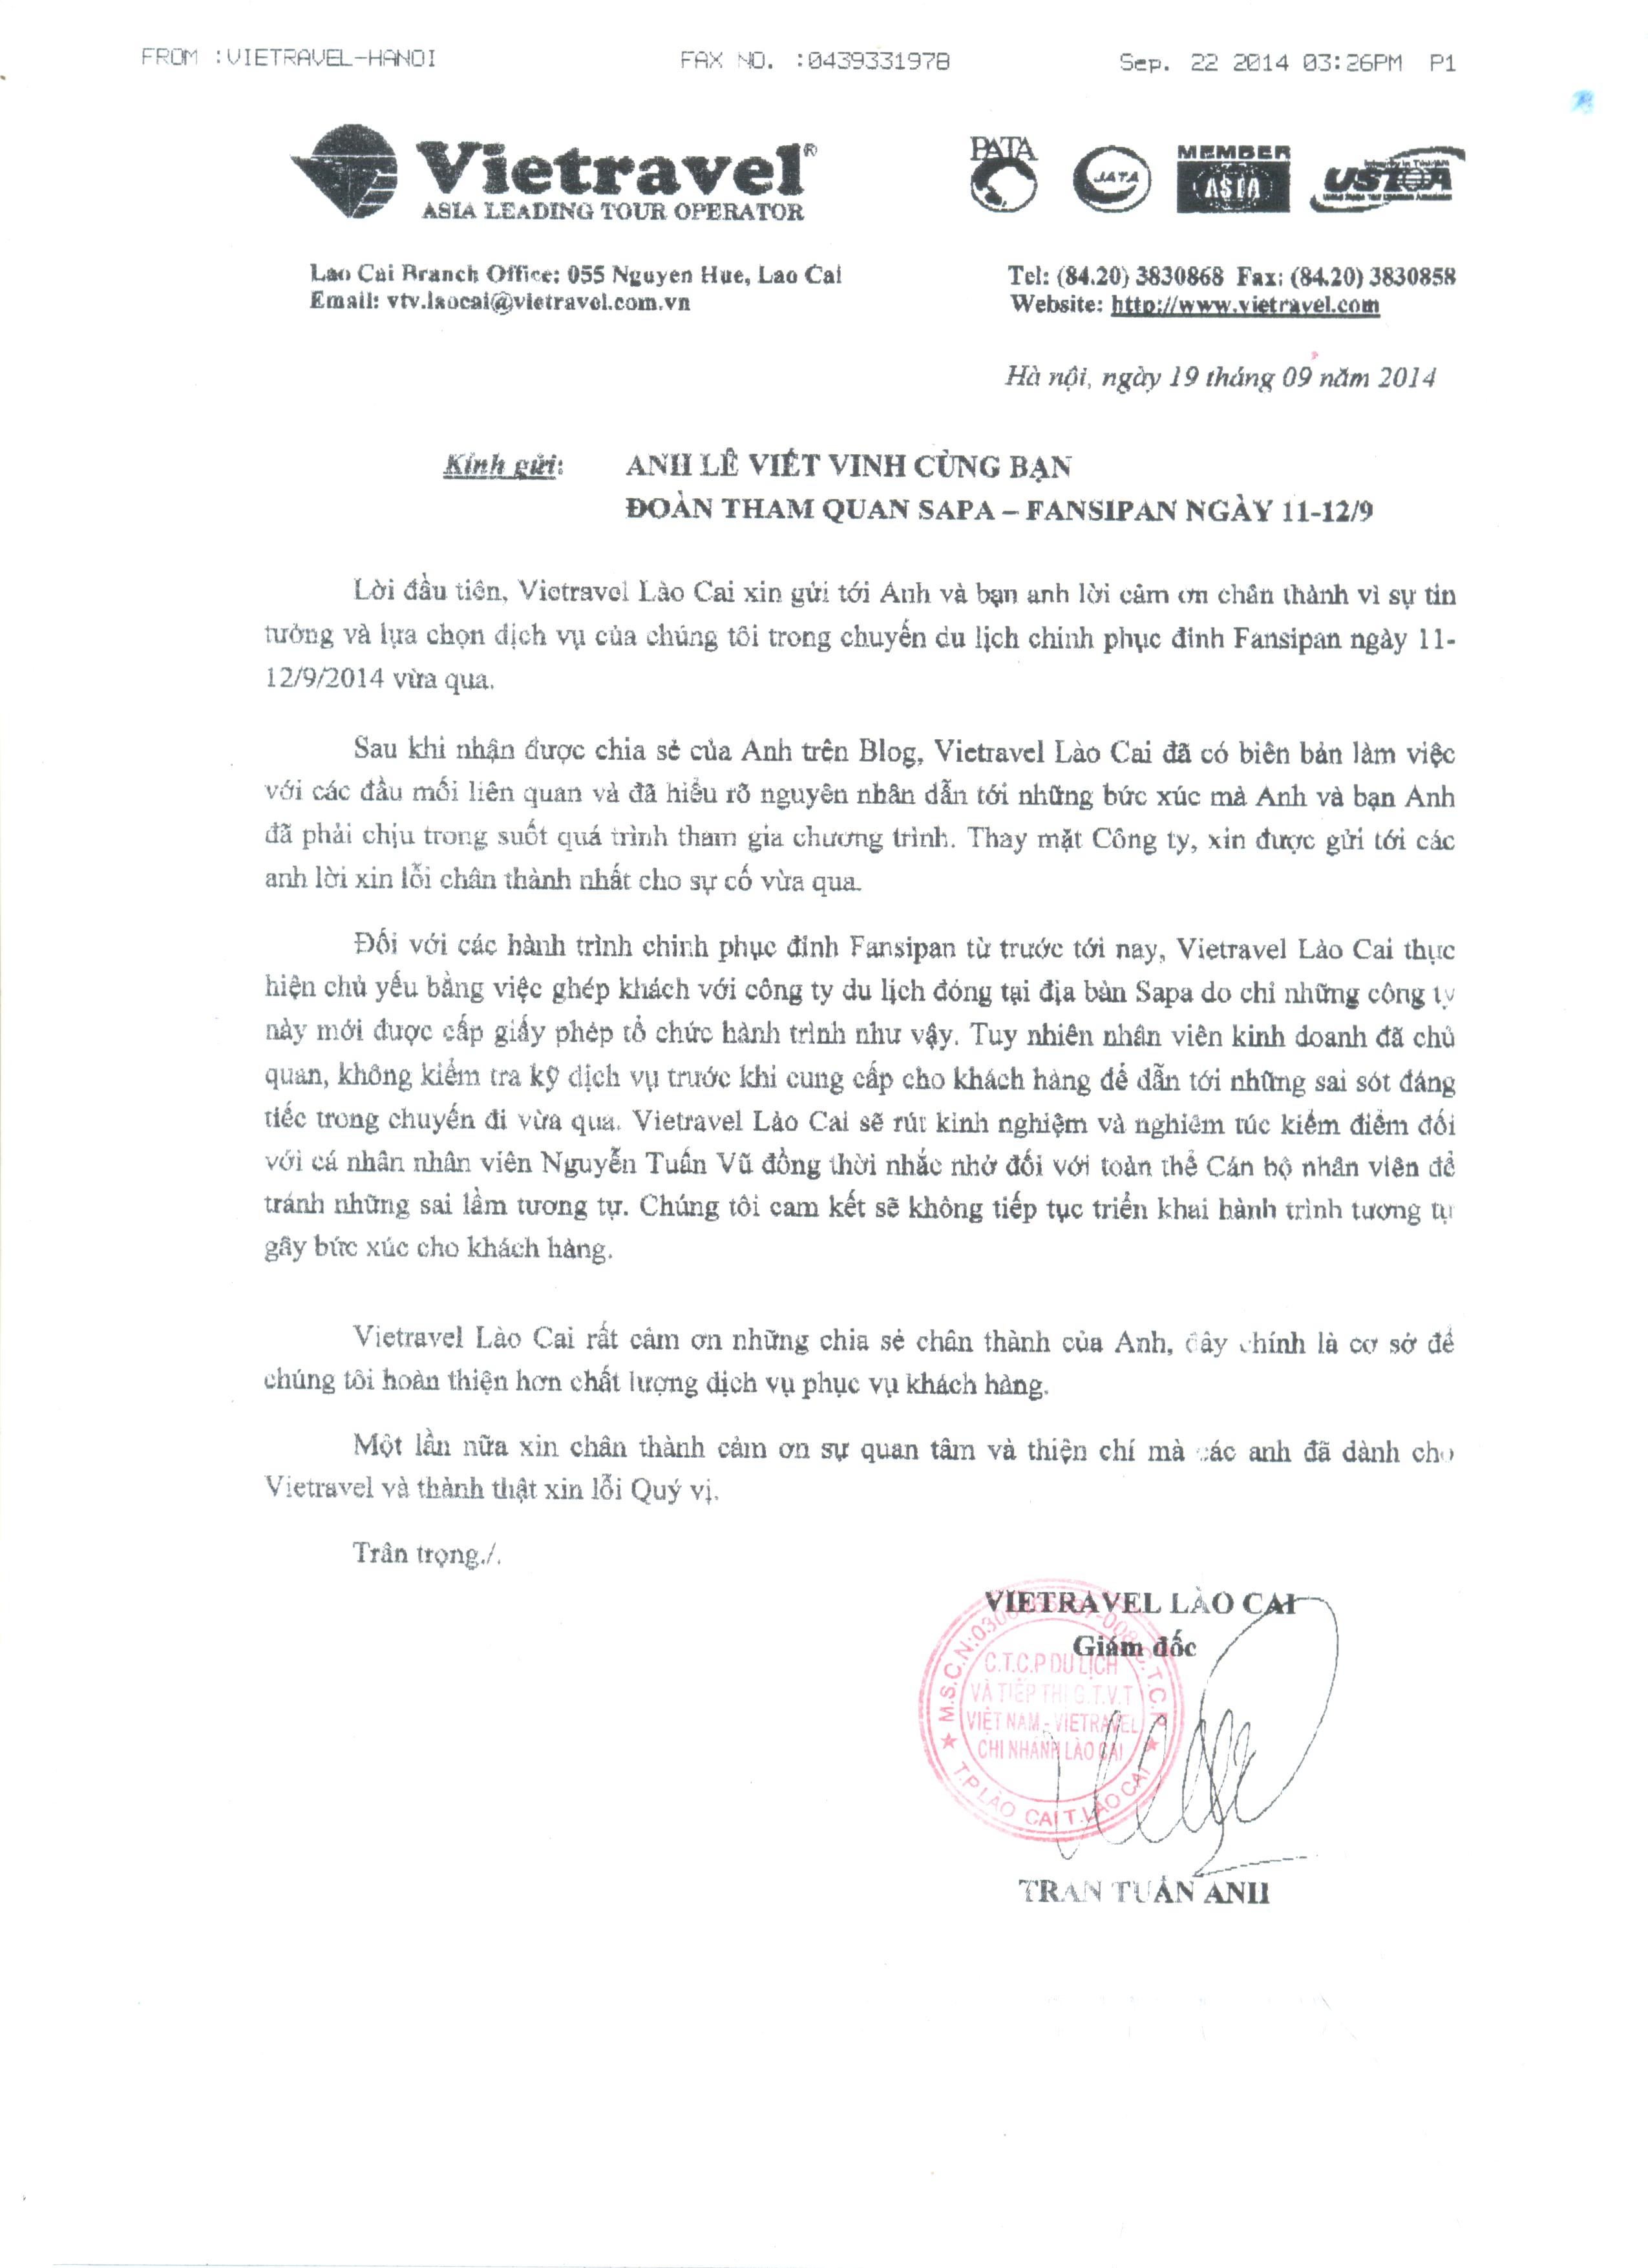 Thư xin lỗi từ lãnh đạo Vietravel Lào Cai